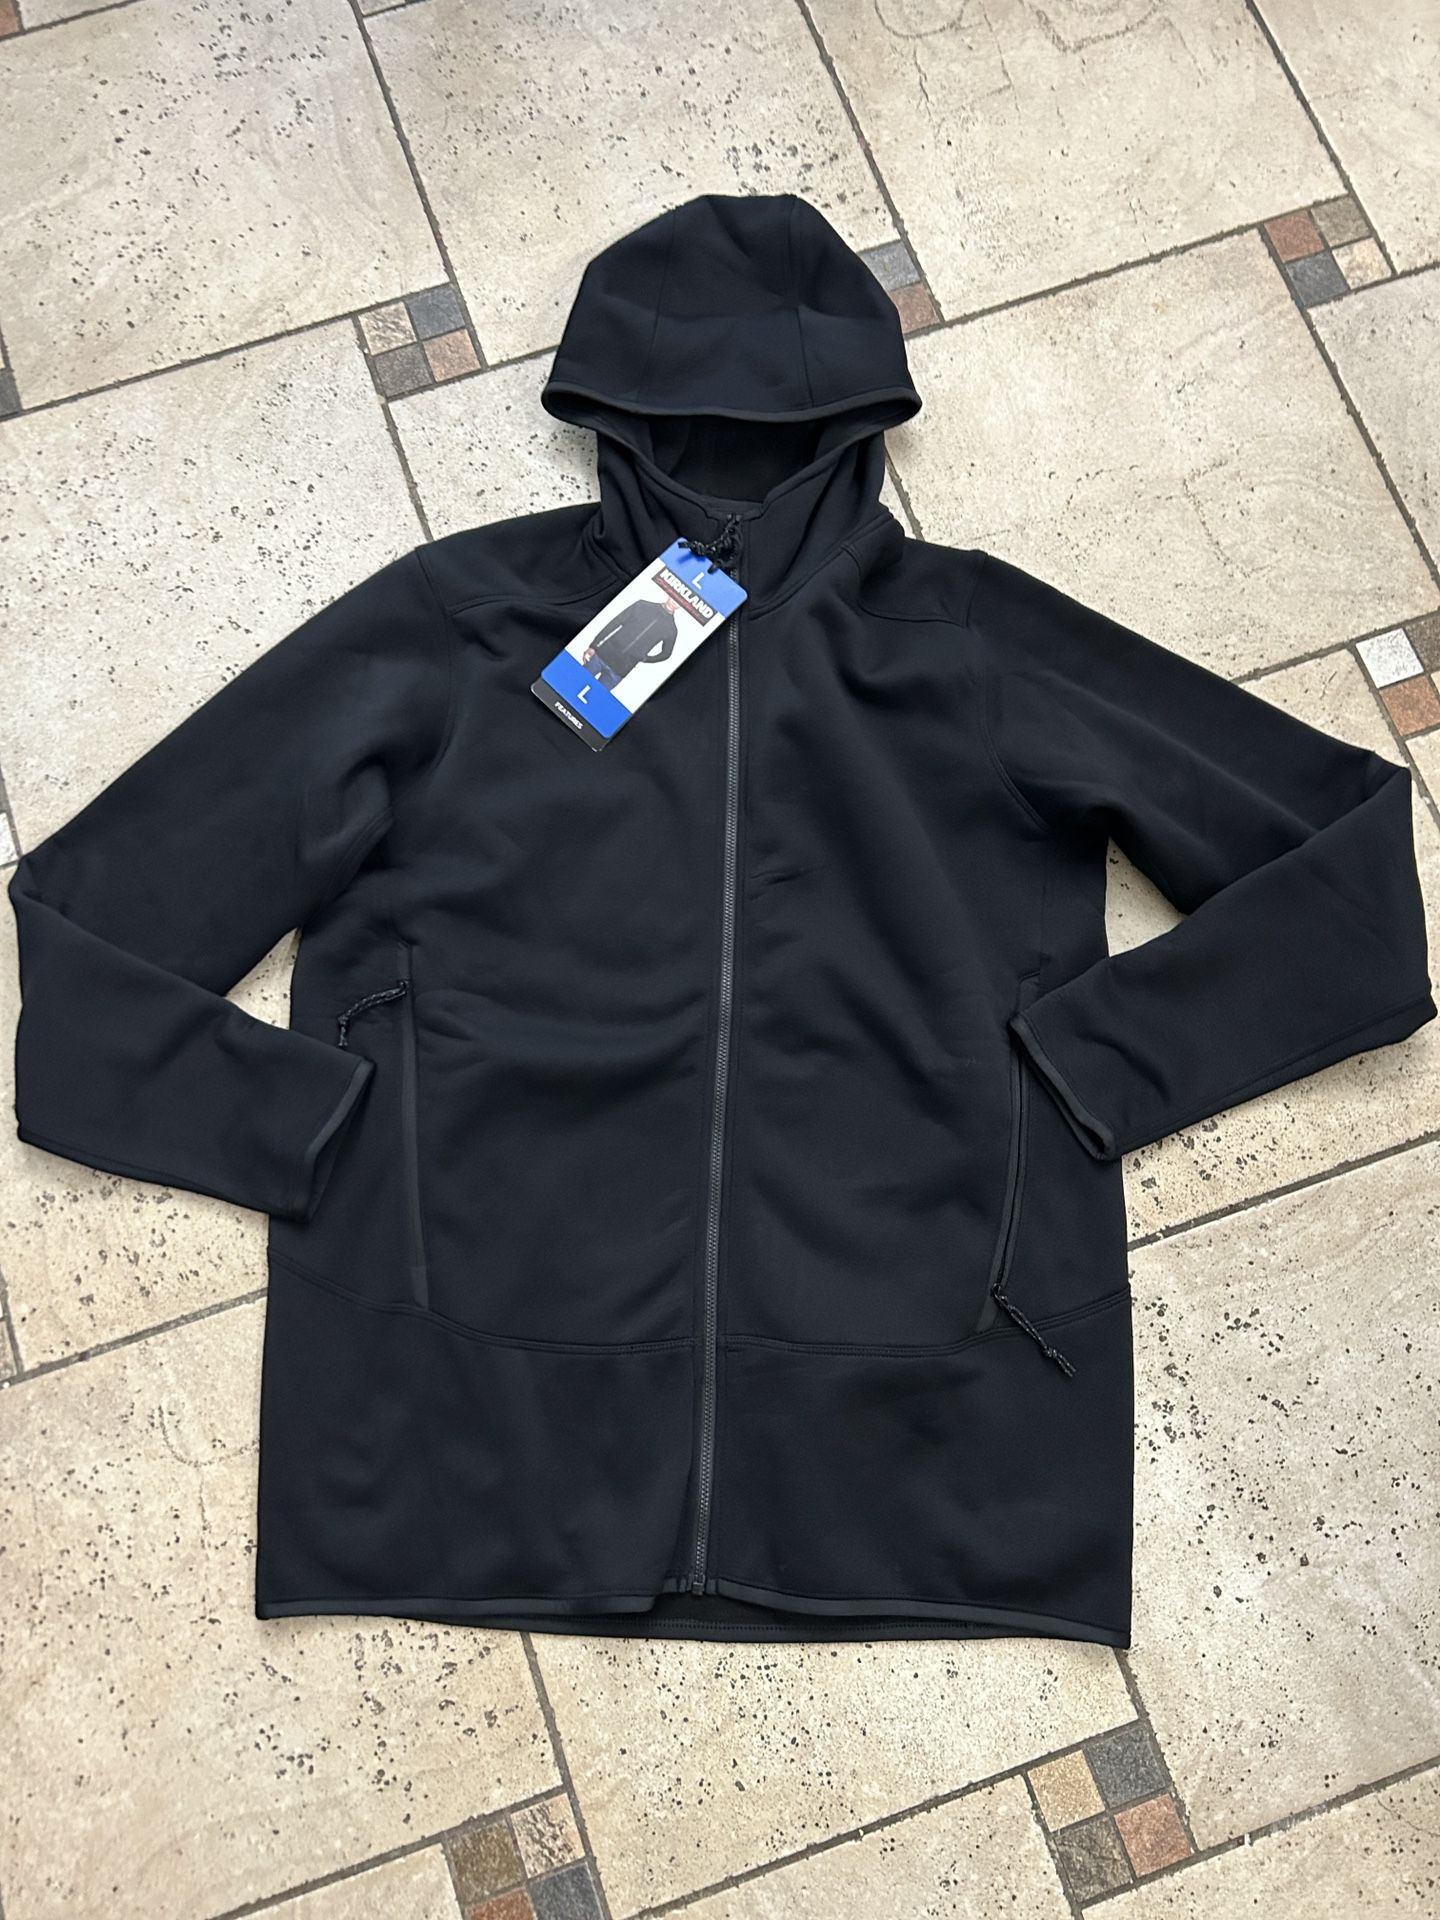 NWT Men’s hooded full zip fleece jacket Size L